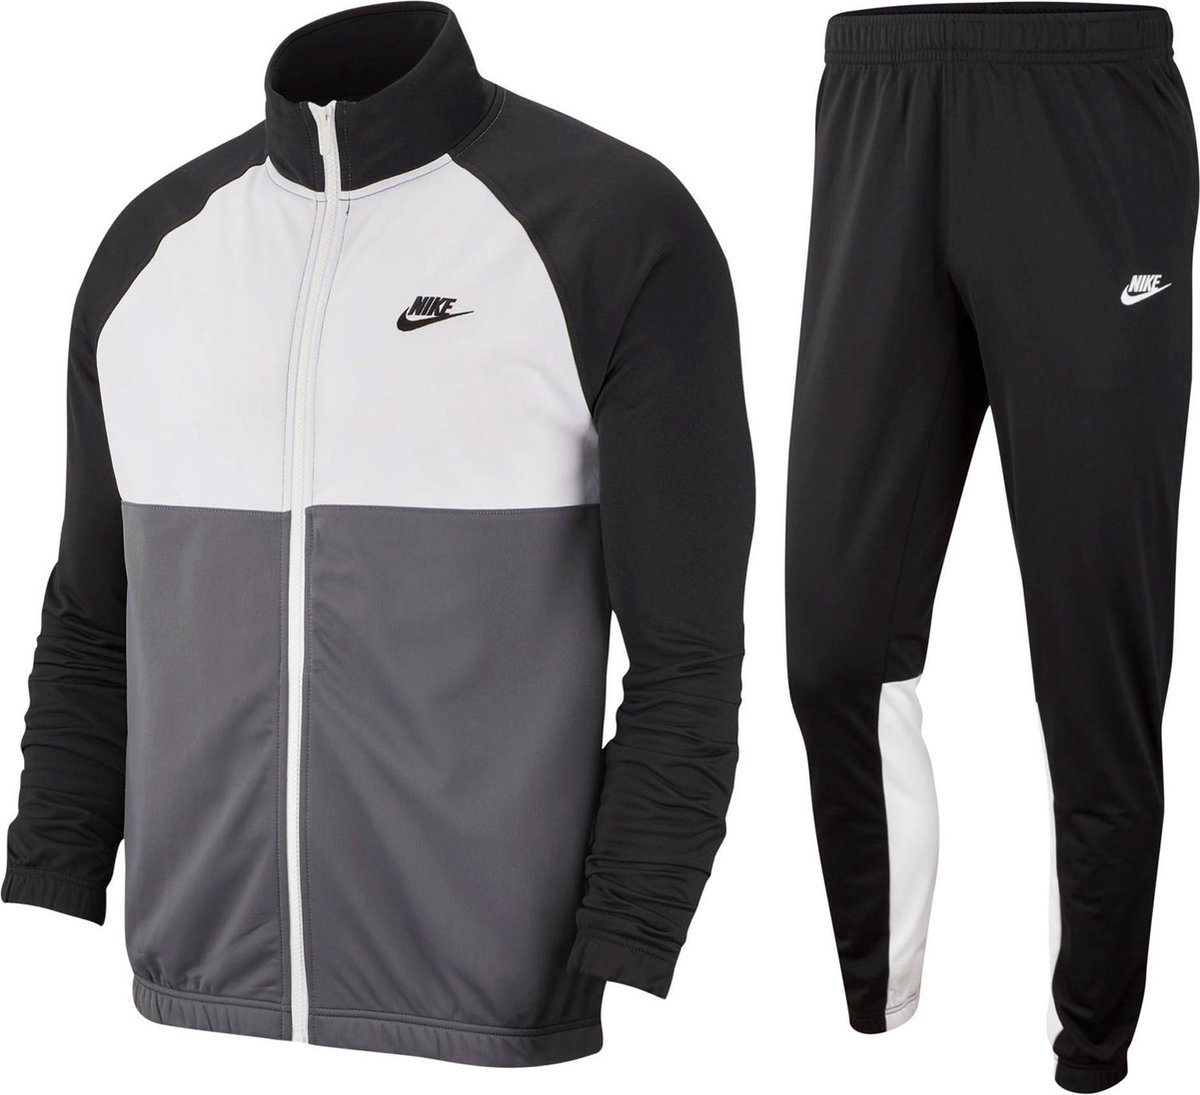 vernieuwen hoog cascade Nike Trainingspak - Maat S - Mannen - zwart/wit/grijs | bol.com